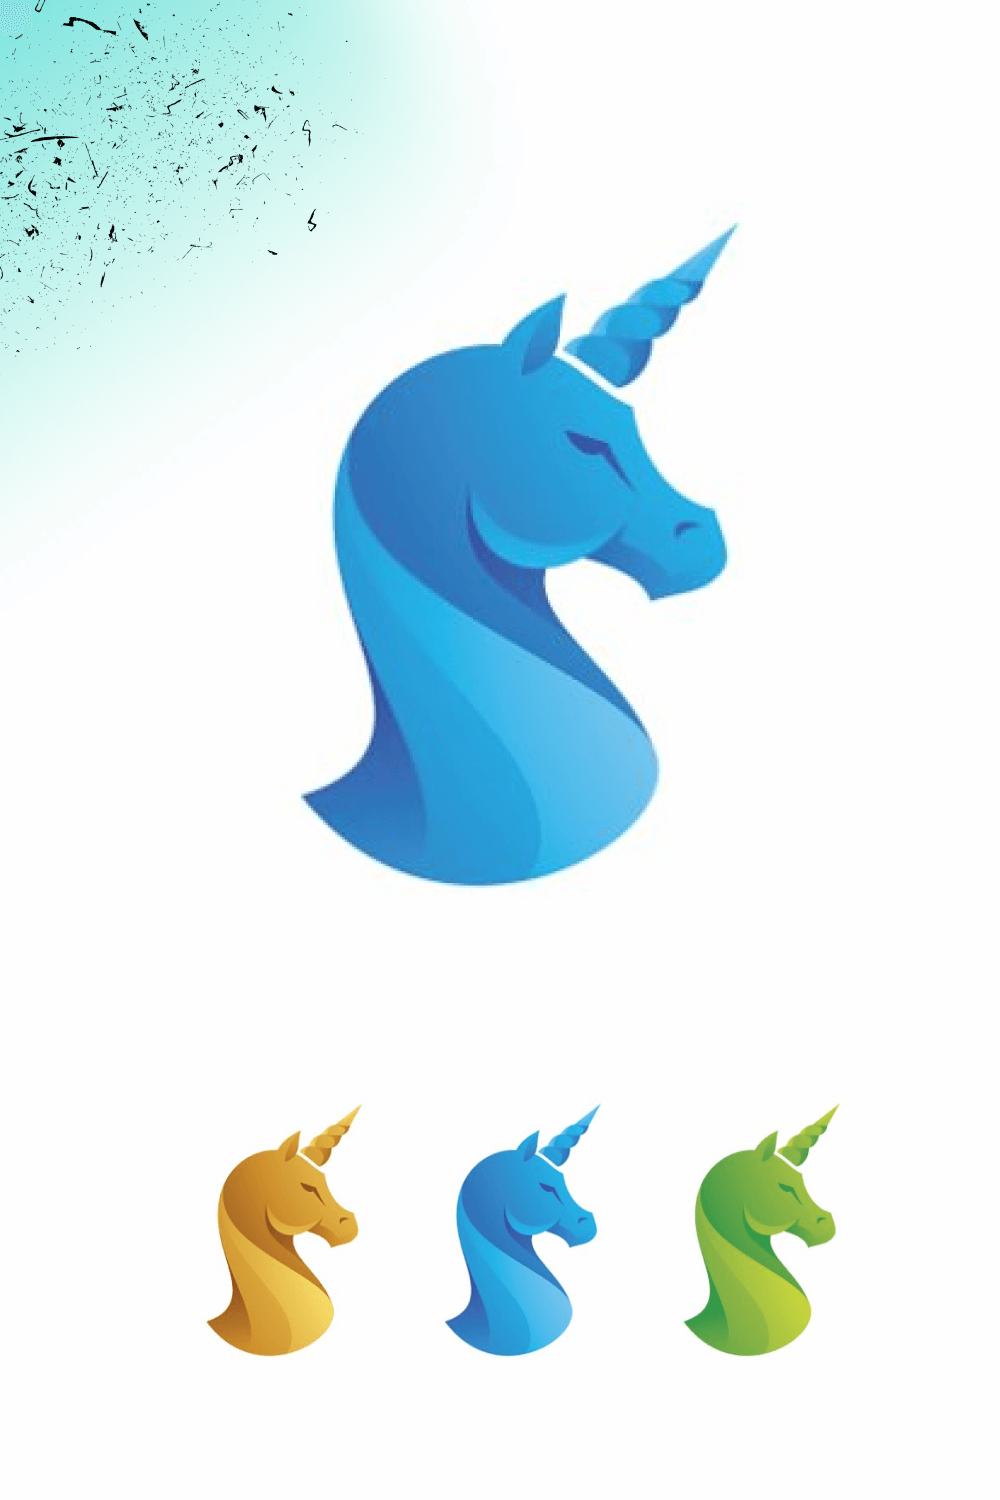 Unicorn logo circle.